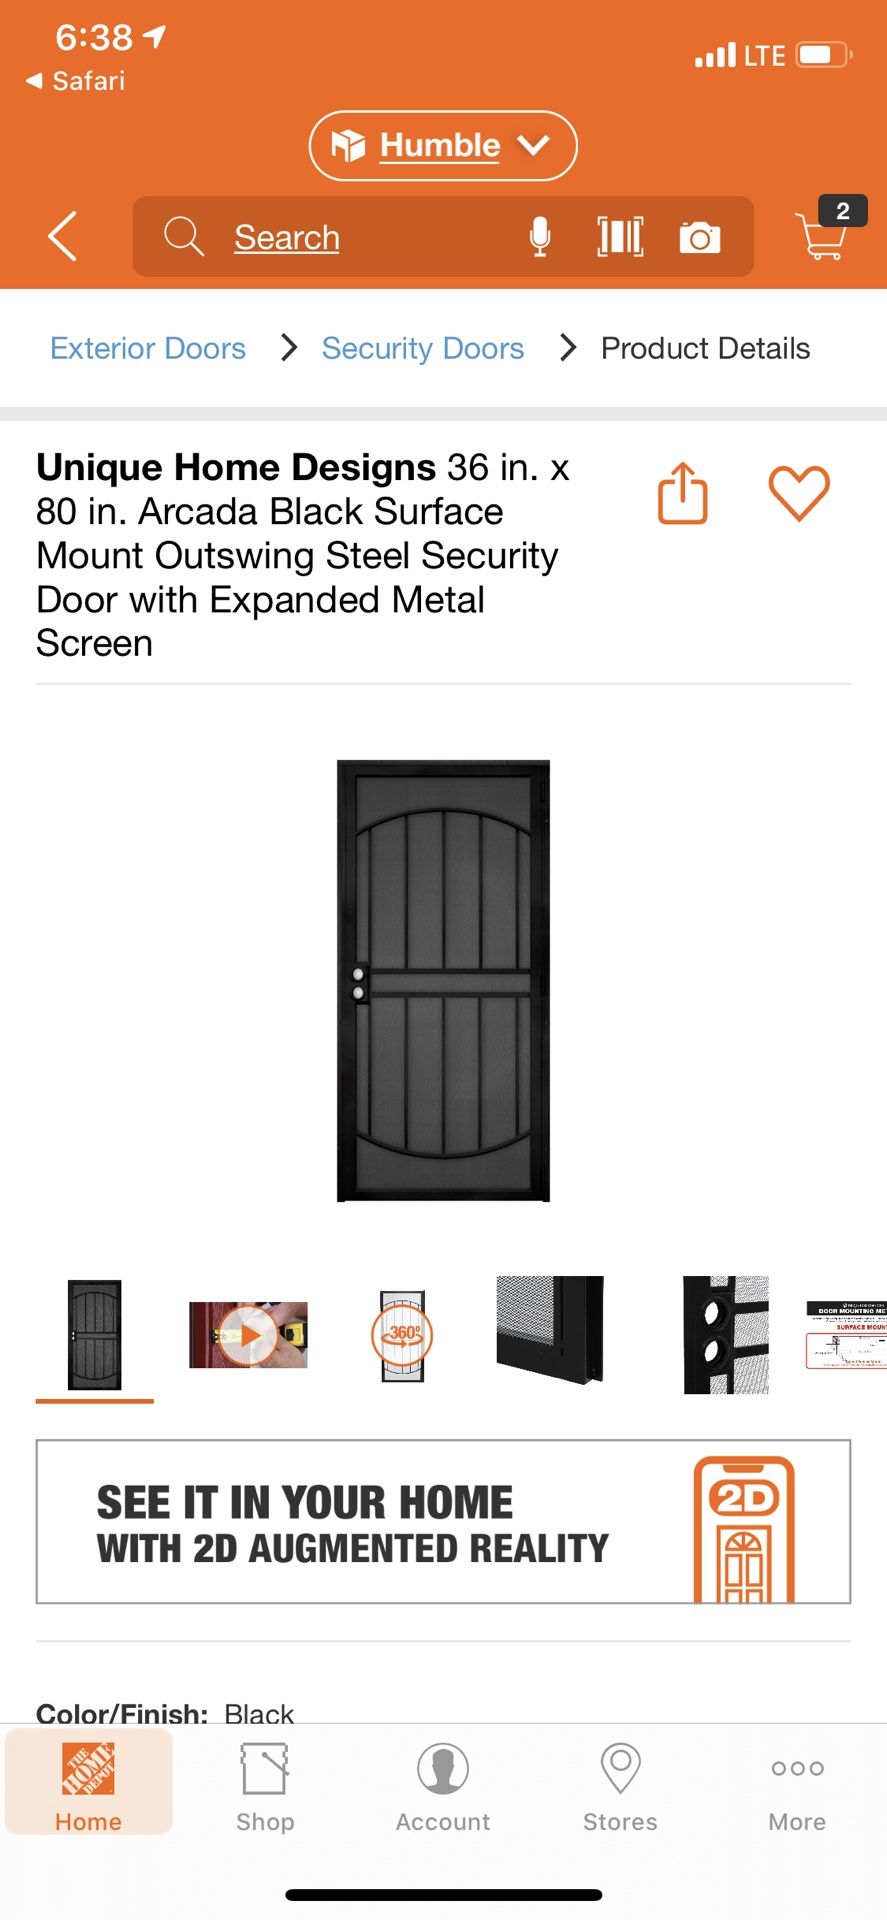 Security screen door